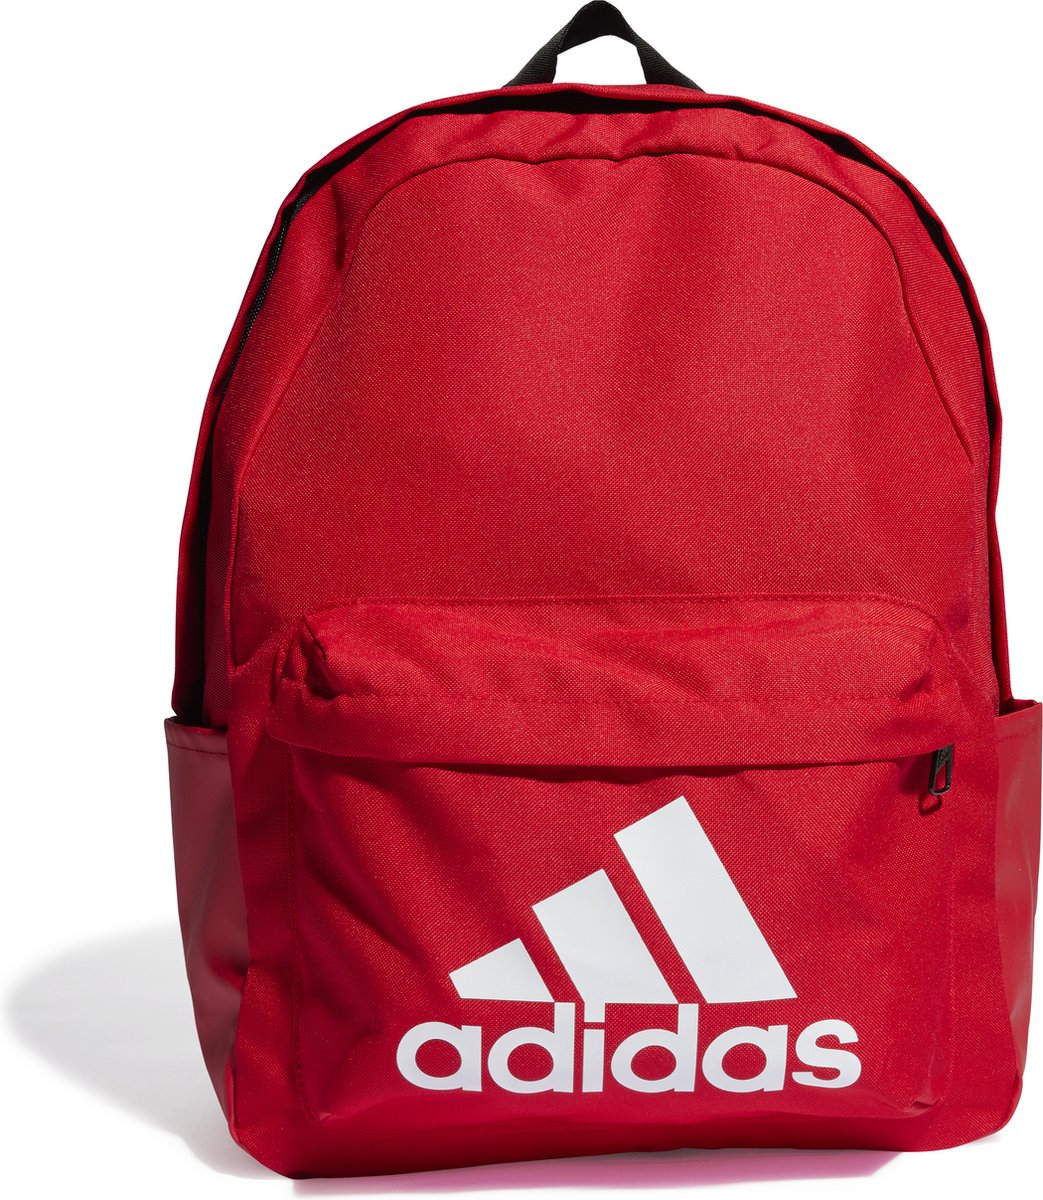 Adidas rugzak logo rood 44 cm